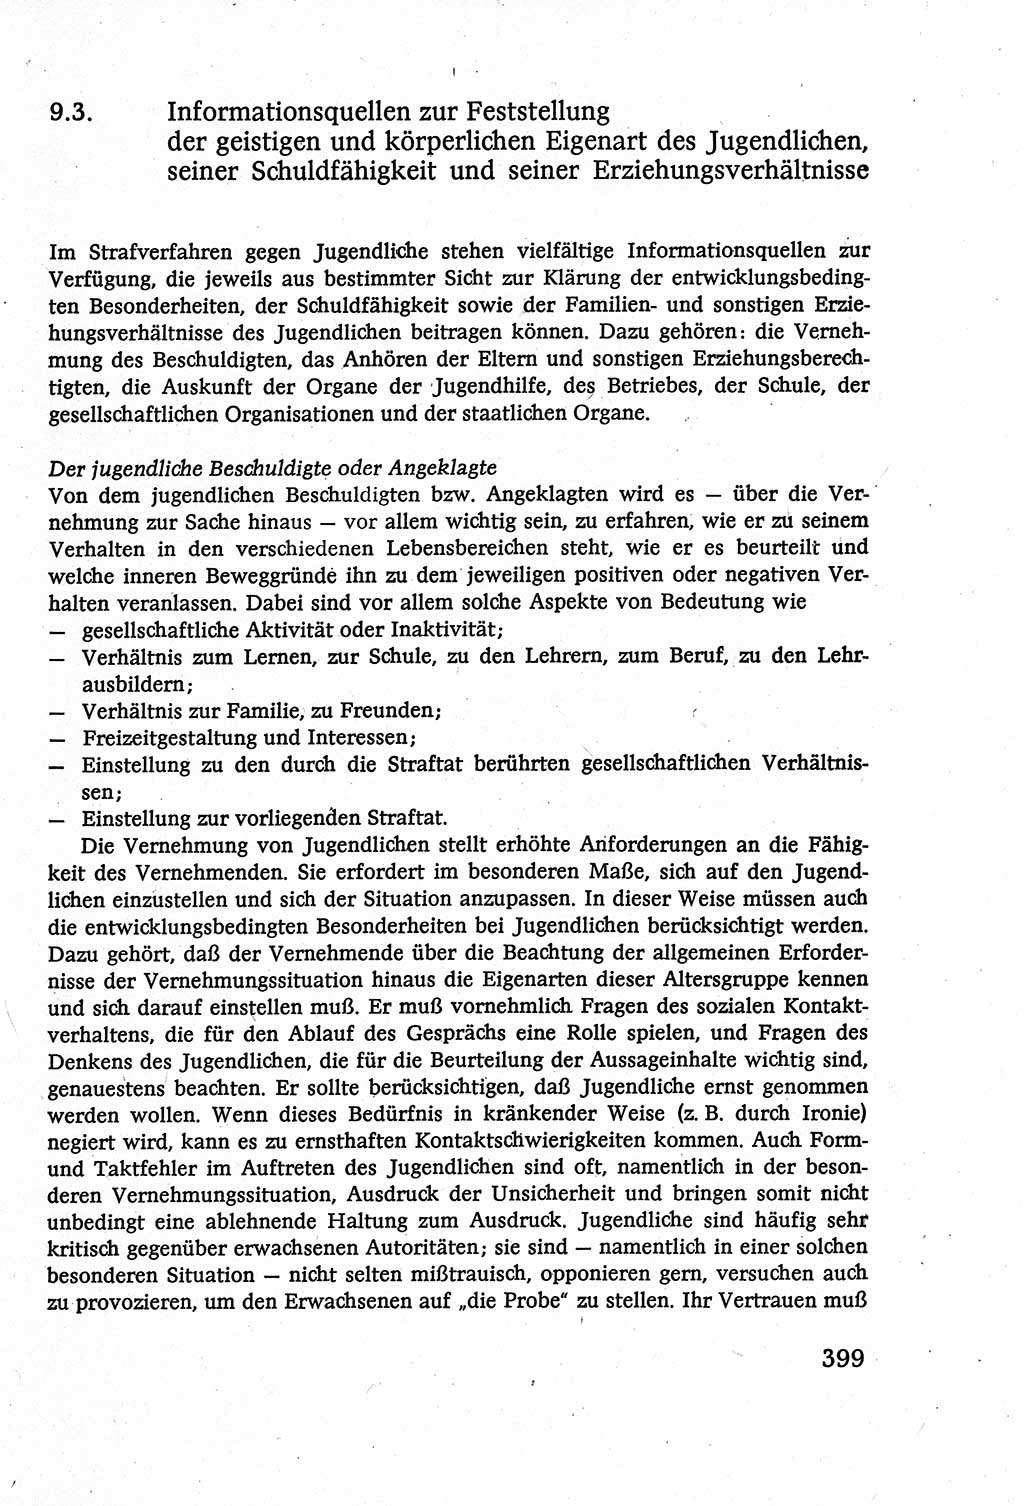 Strafverfahrensrecht [Deutsche Demokratische Republik (DDR)], Lehrbuch 1977, Seite 399 (Strafverf.-R. DDR Lb. 1977, S. 399)